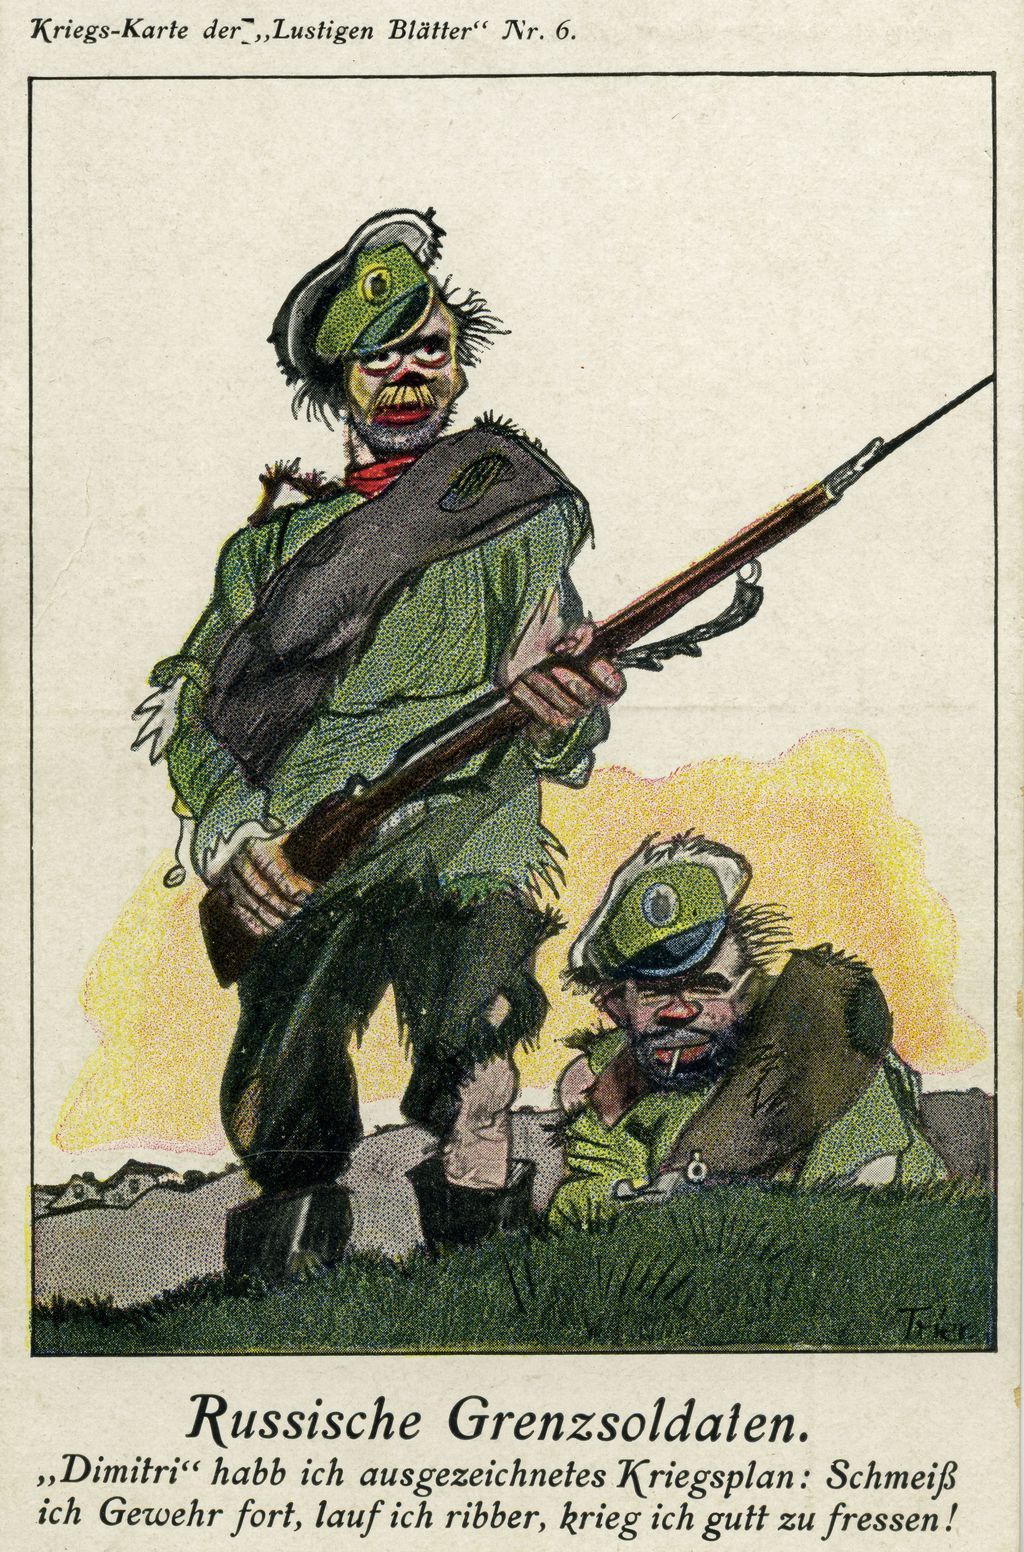 Postkarte: "Russische Grenzsoldaten", 1914